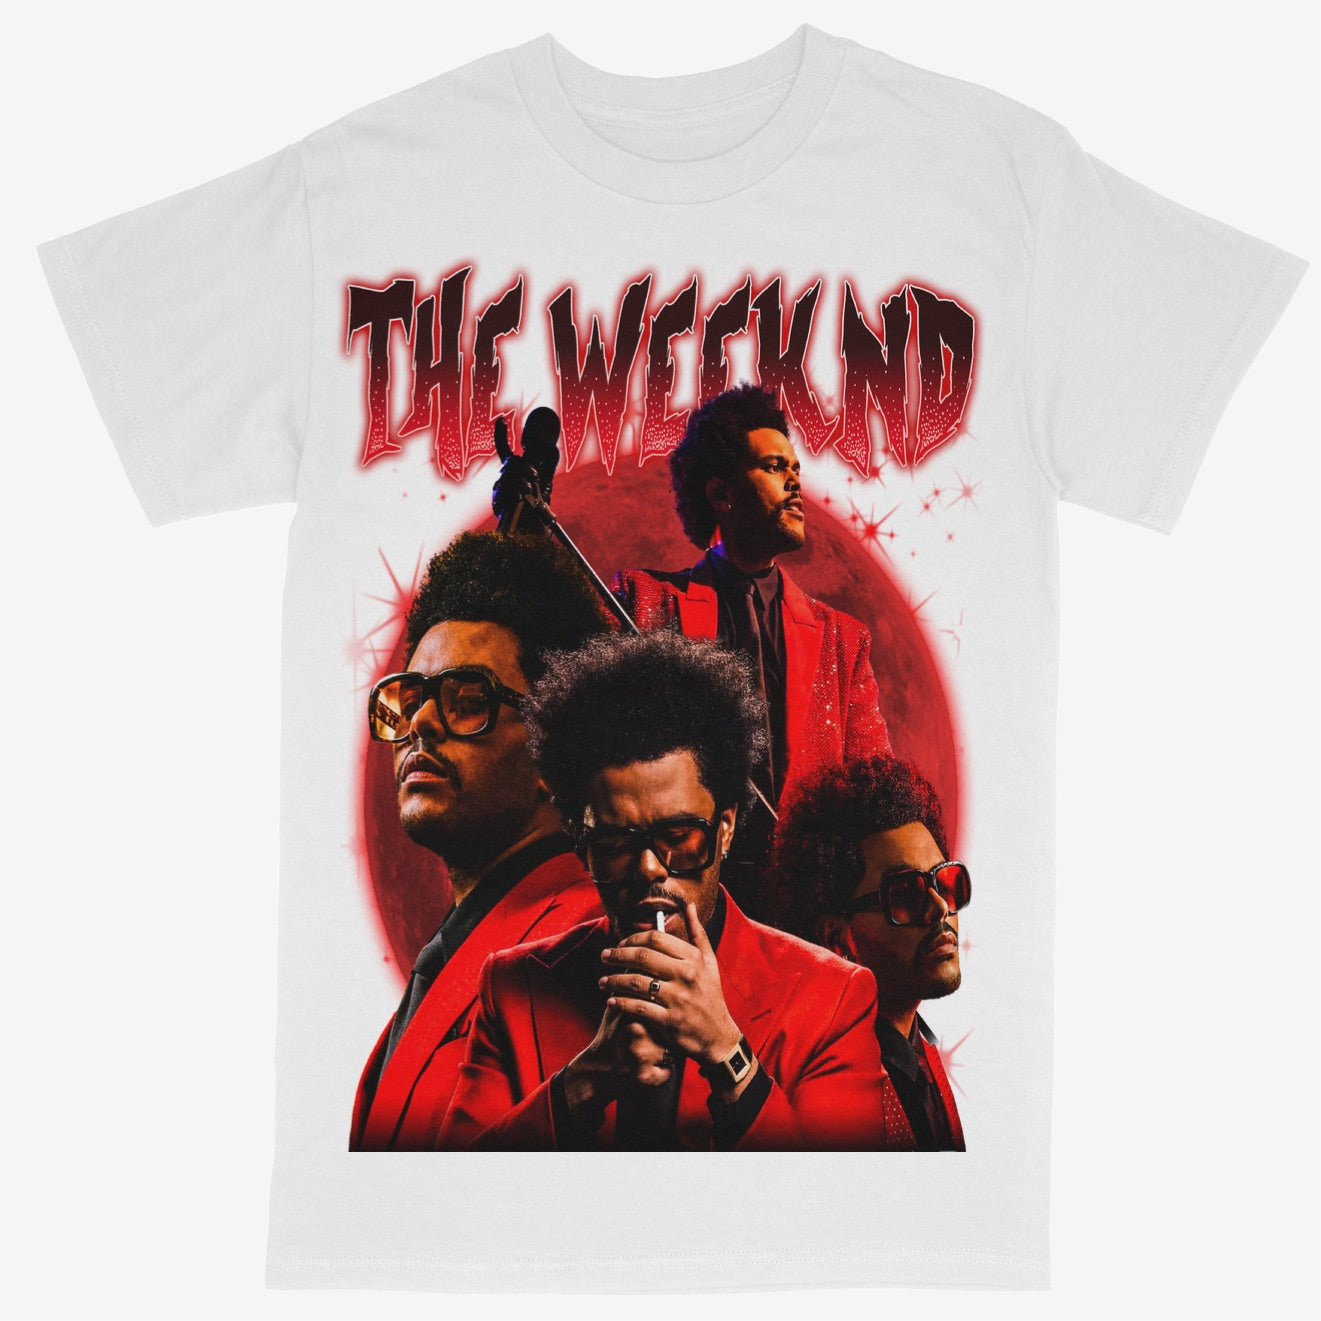 The Weeknd Tee Shirt Rap Style Concert Tour Music Artist